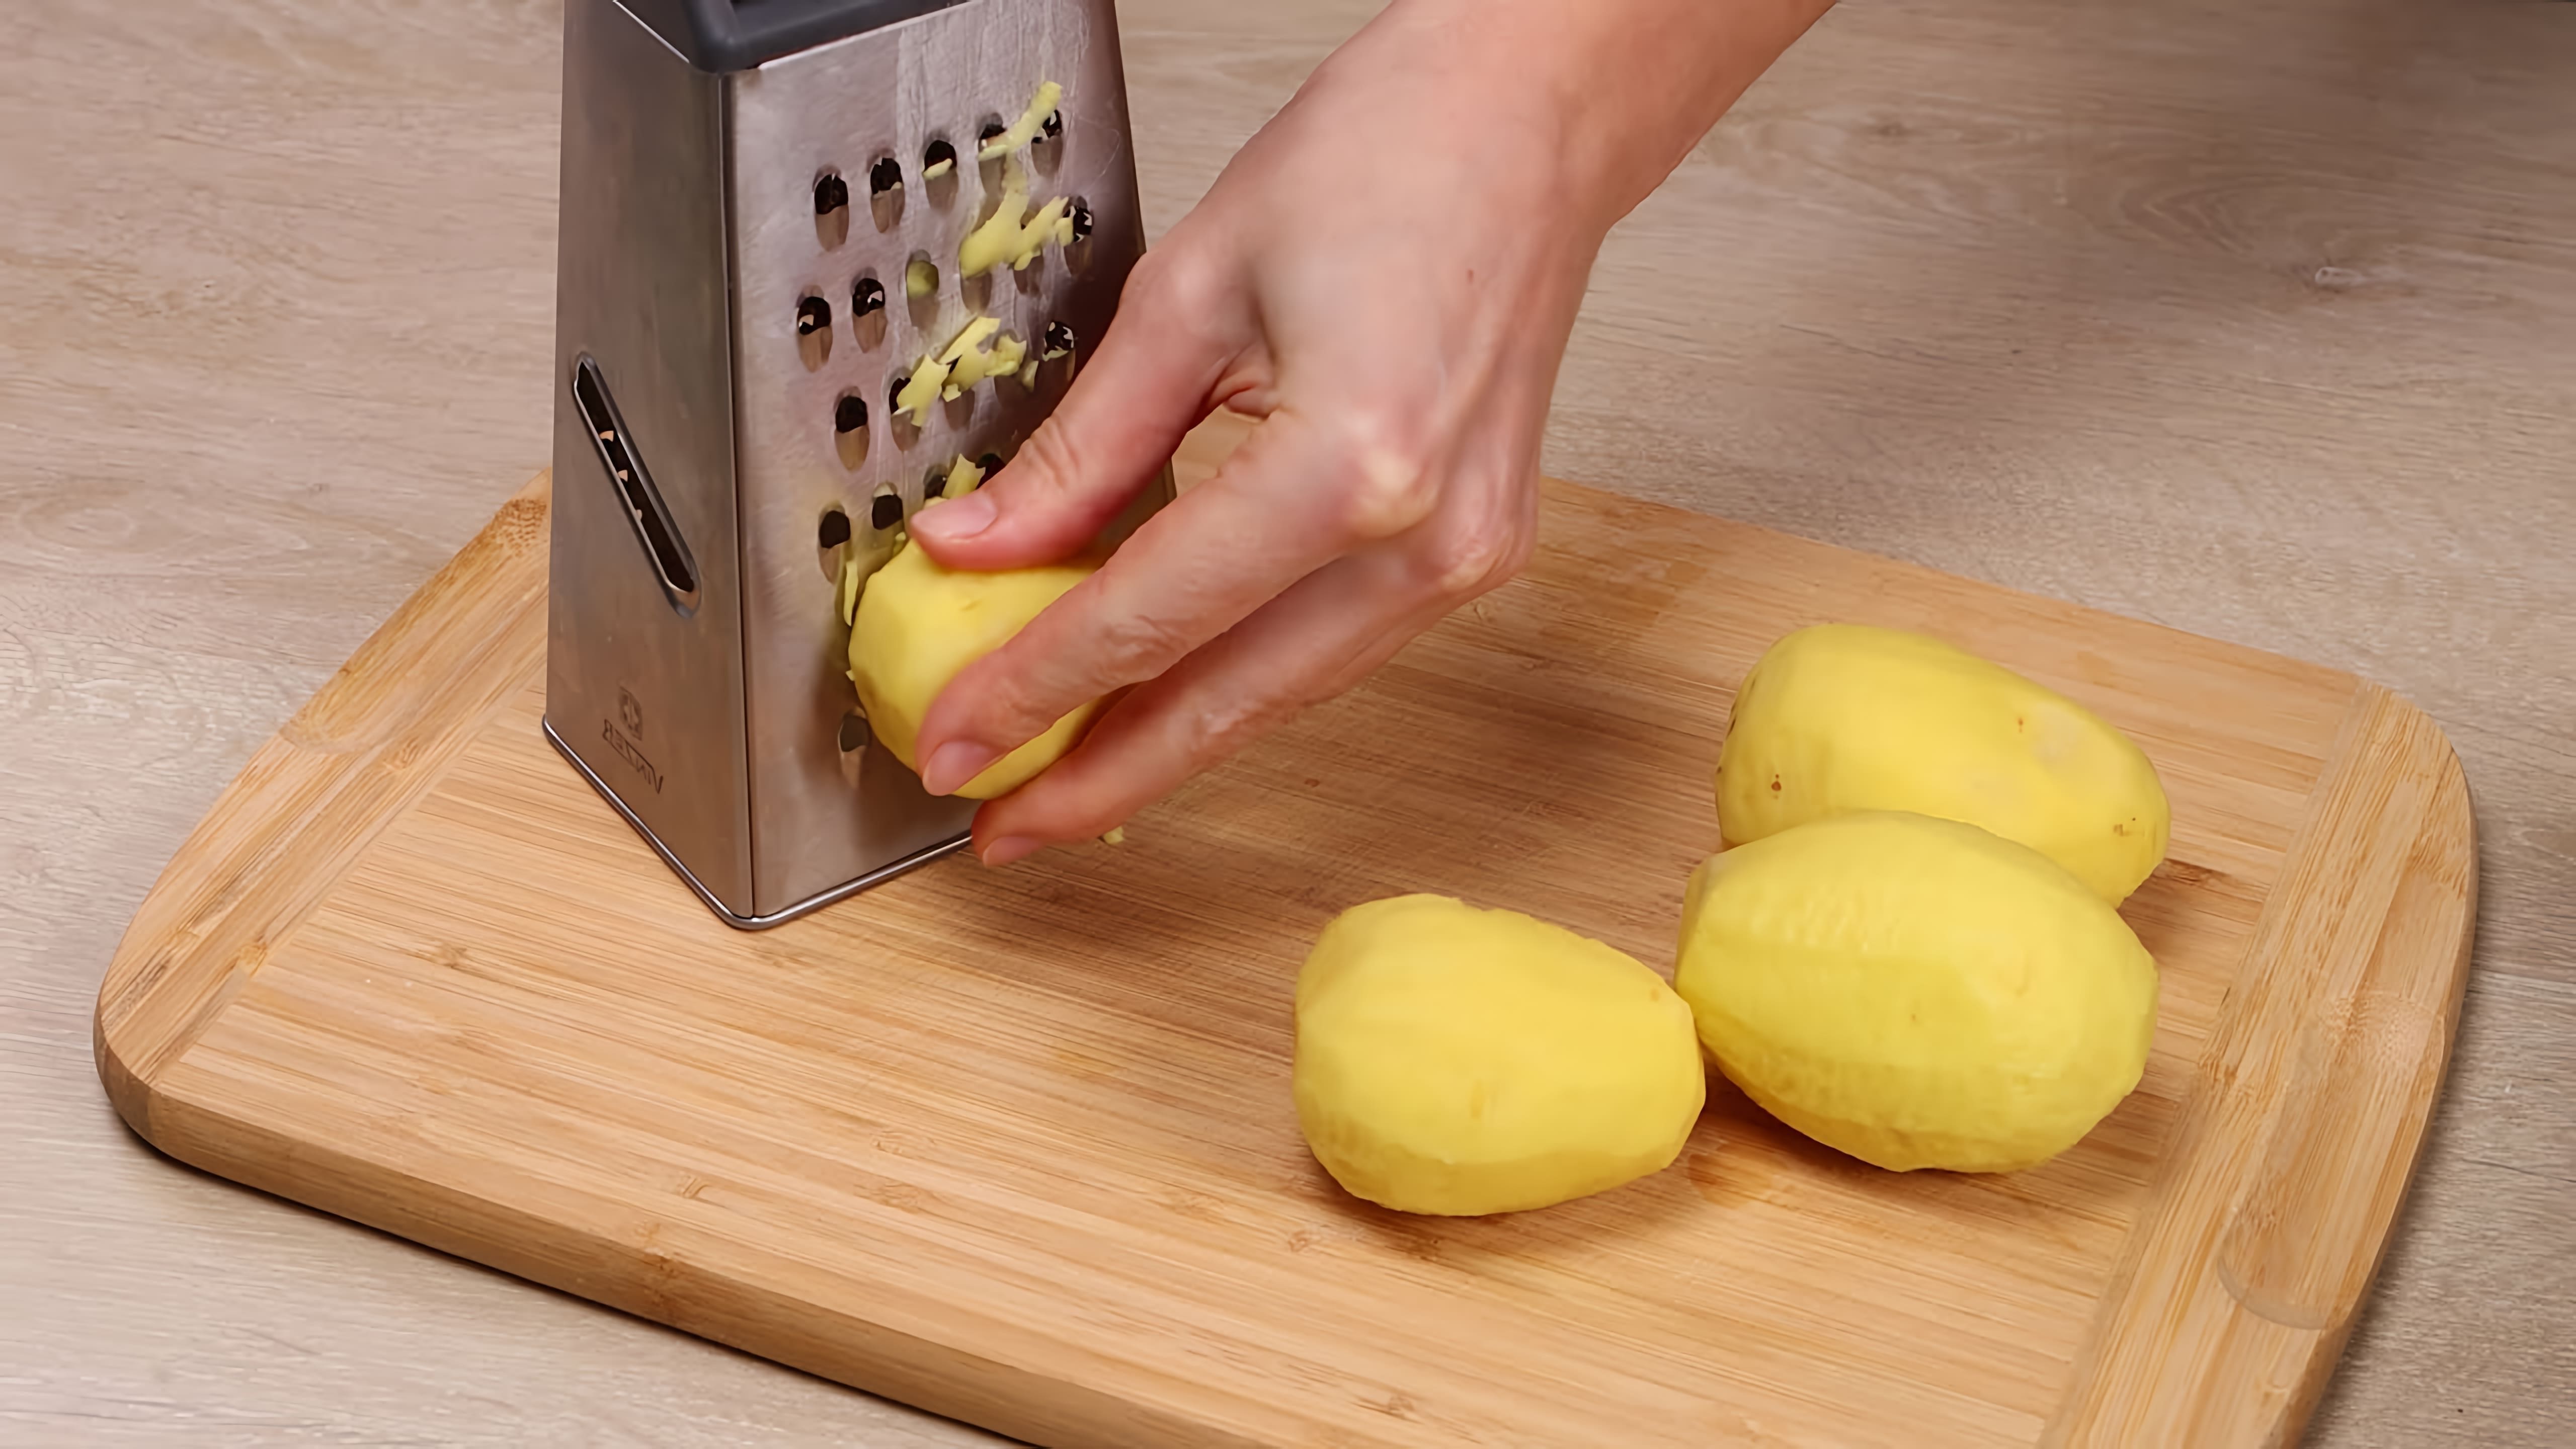 В этом видео демонстрируется простой рецепт приготовления картофельных драников с начинкой из зелени и яйца